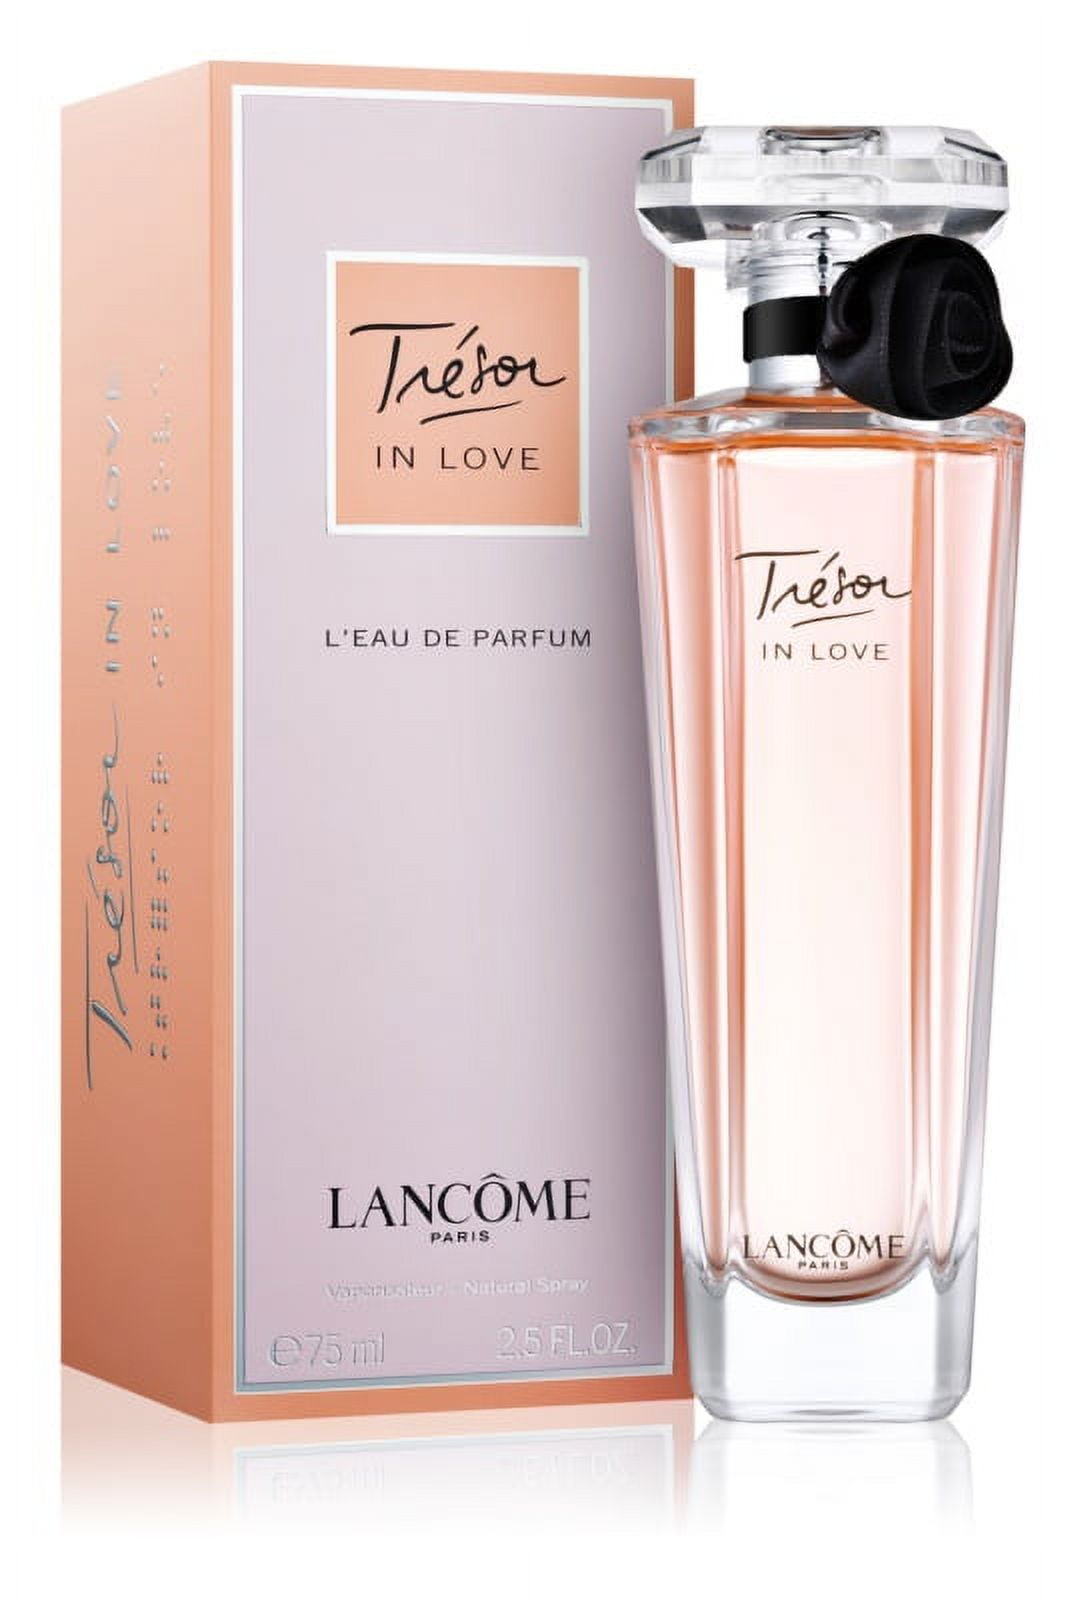 Lancome Tresor in Love Eau de Parfum for Women 2.5 fl. oz *EN - Walmart.com